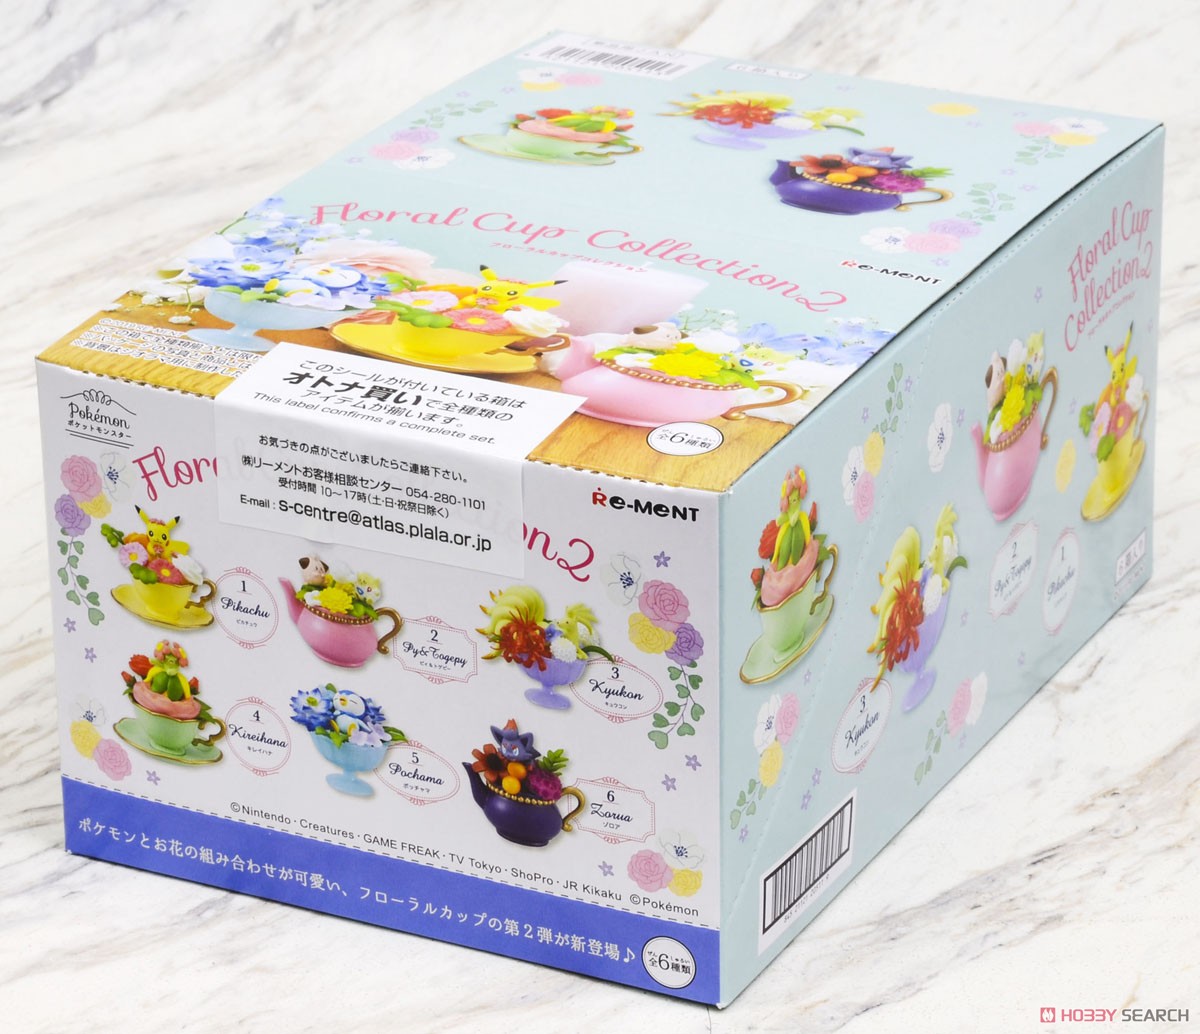 ポケットモンスター Floral Cup Collection 2 (6個セット) (食玩) パッケージ1